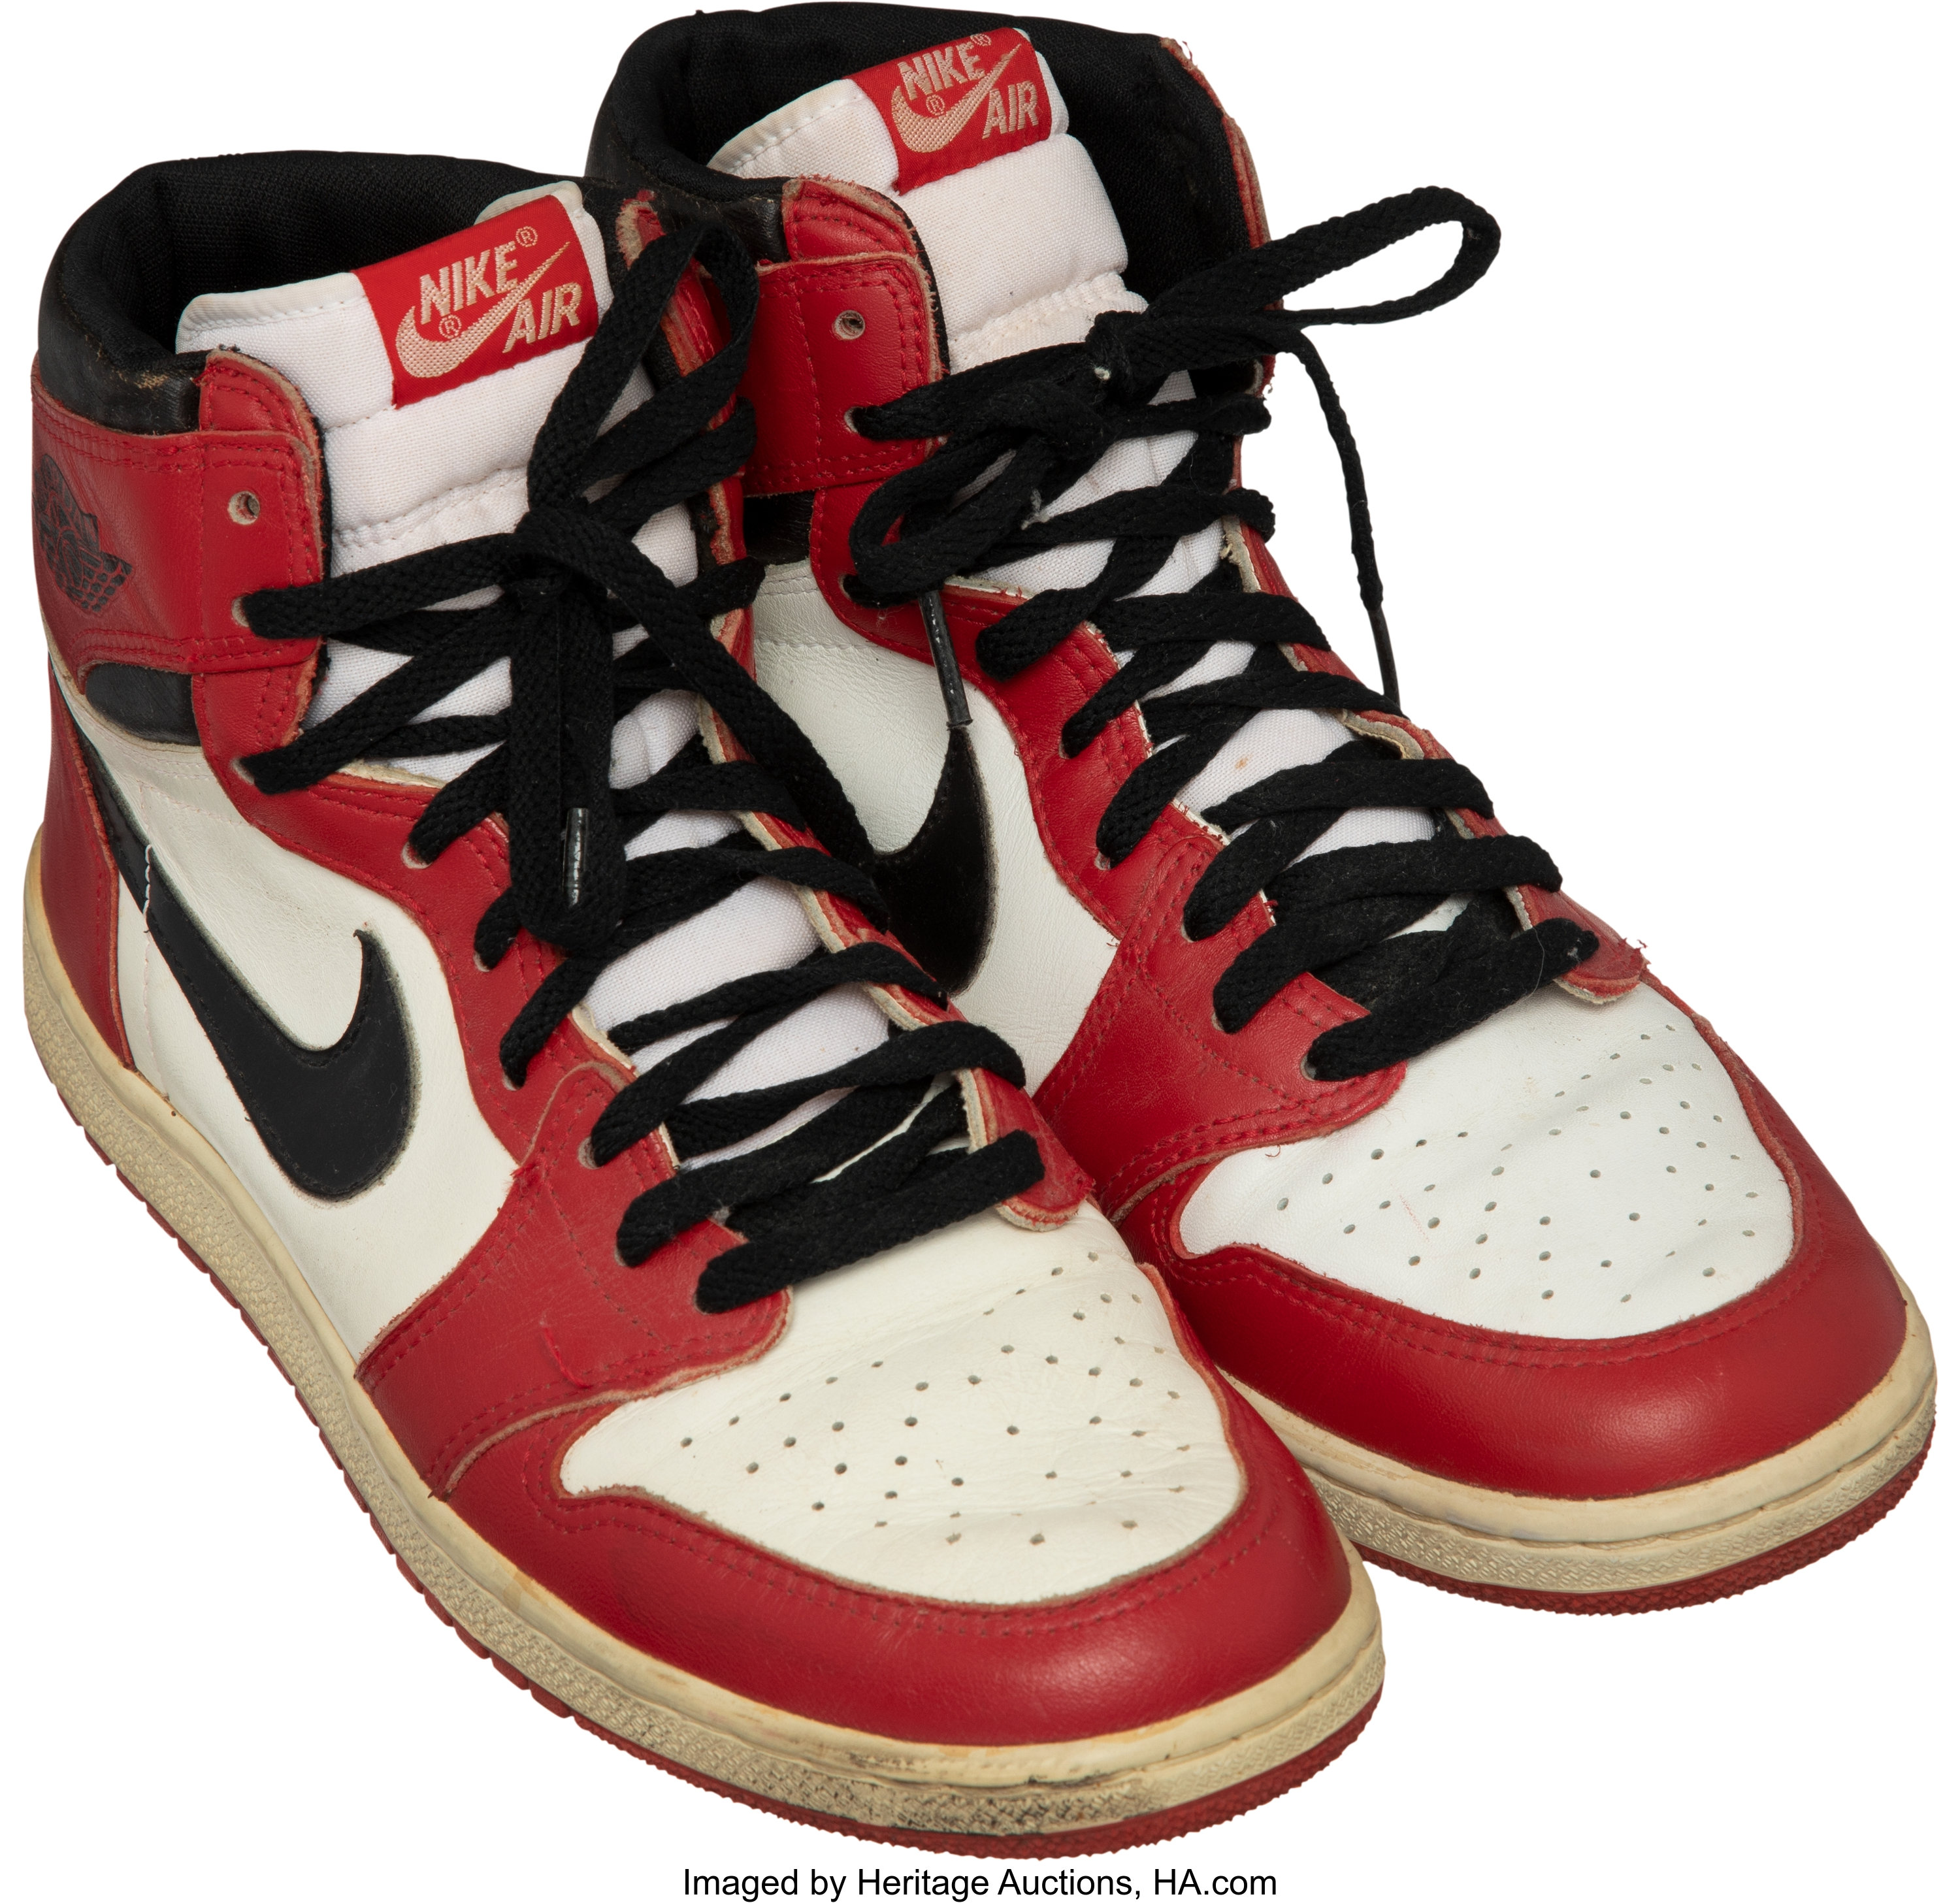 Svaghed frø Hændelse 1985 Original Air Jordan I Nike Sneakers. ... Basketball | Lot #53309 |  Heritage Auctions